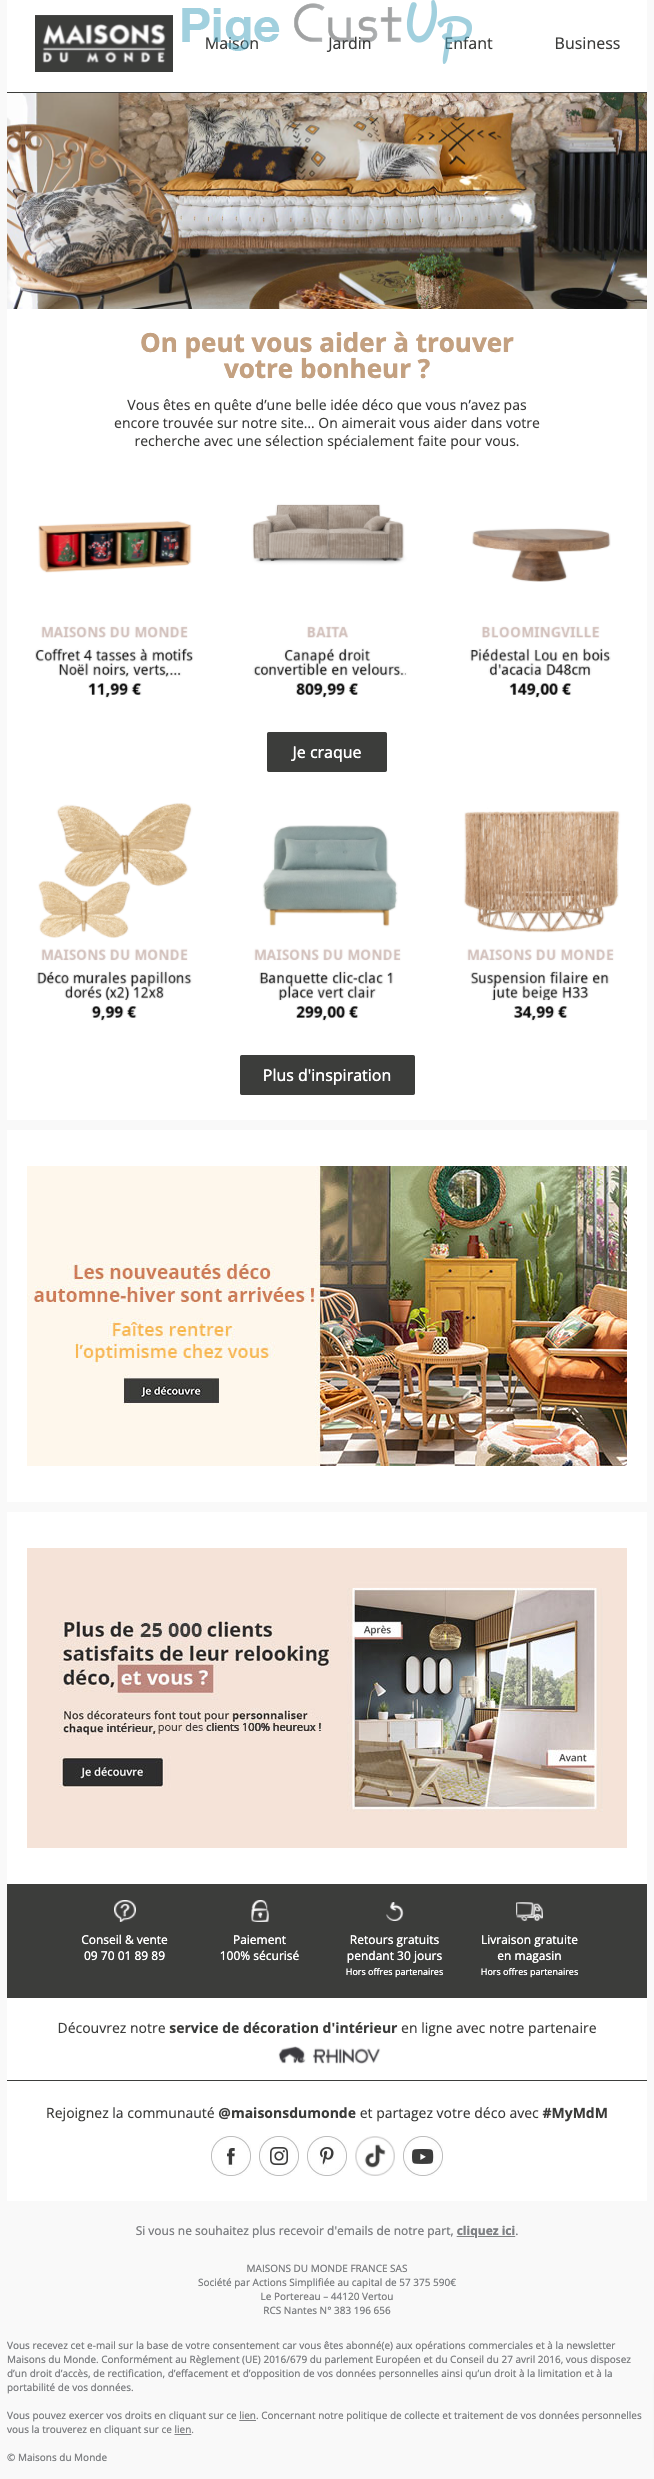 Exemple de Type de media  e-mailing - Maisons du Monde - Marketing Acquisition - Rebond Commercial